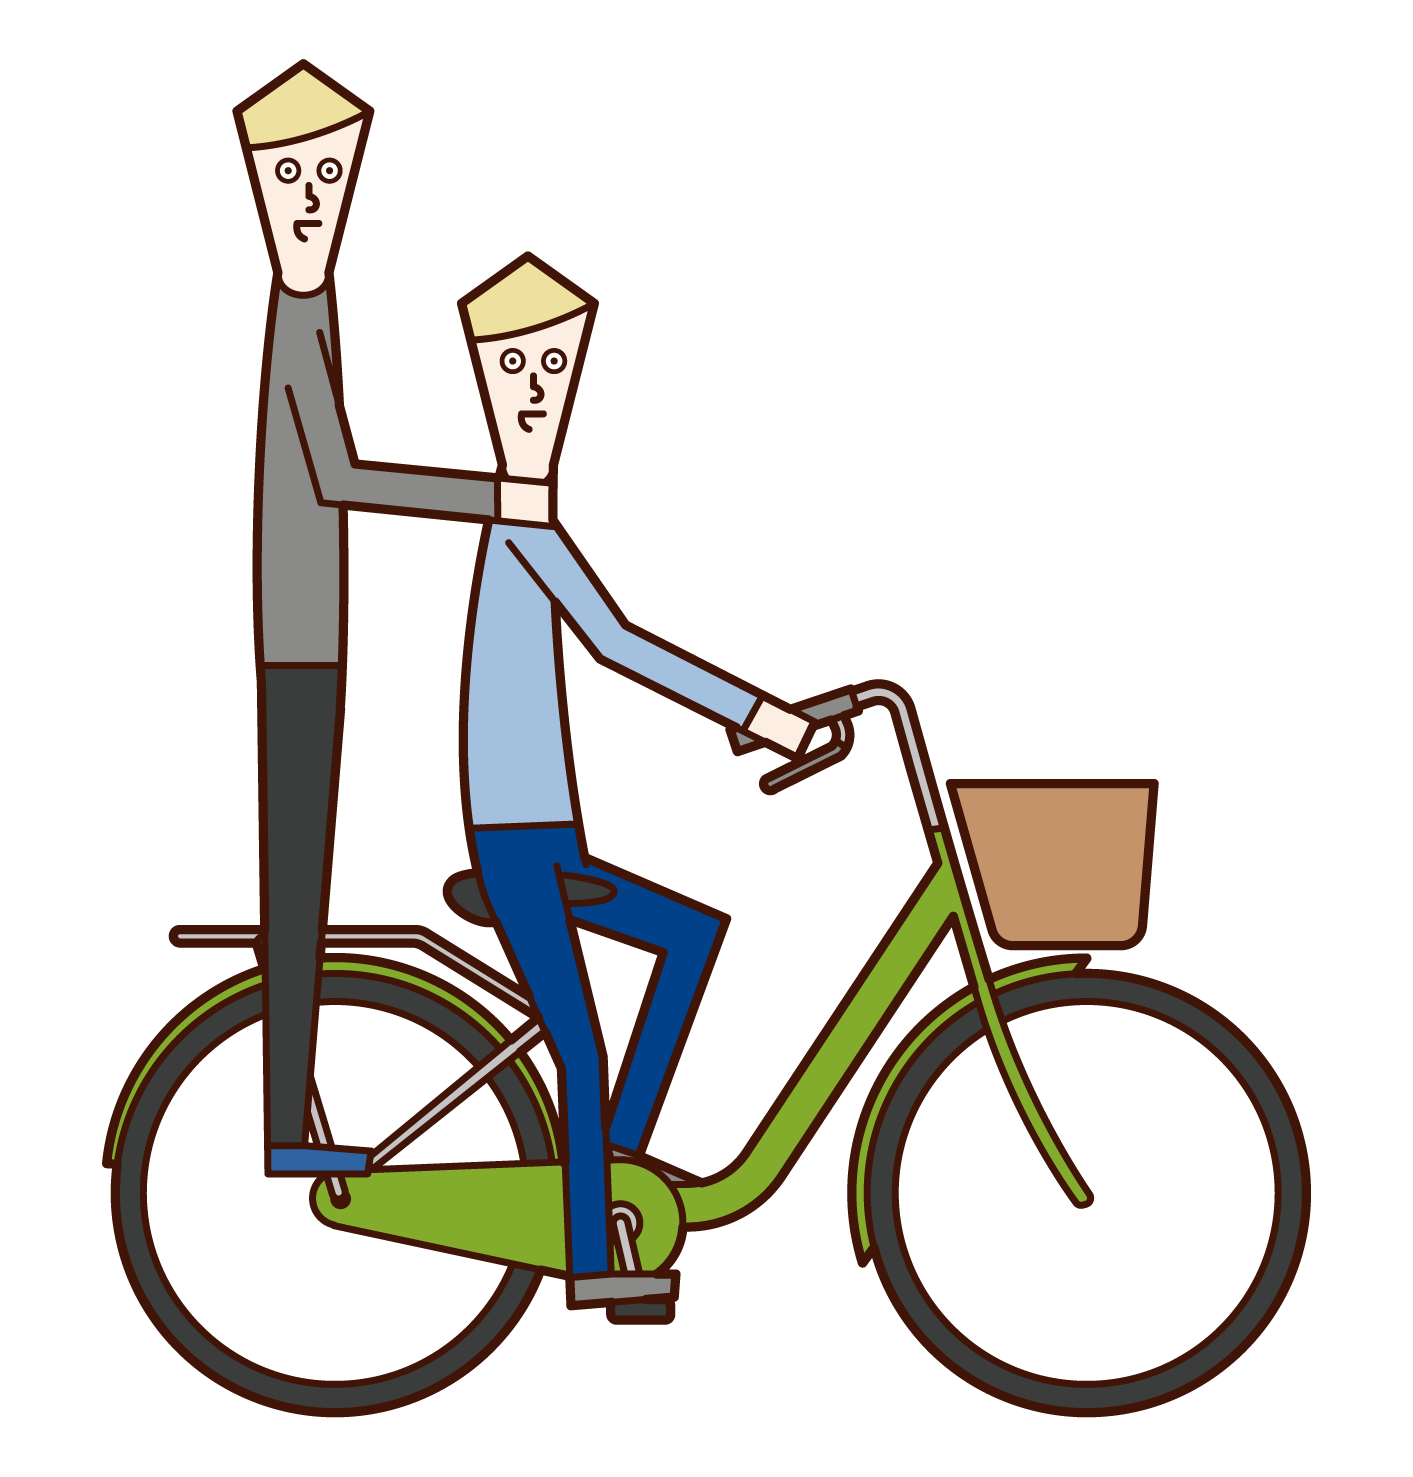 自転車に二人乗りする人たちのイラスト フリーイラスト素材 Kukukeke ククケケ